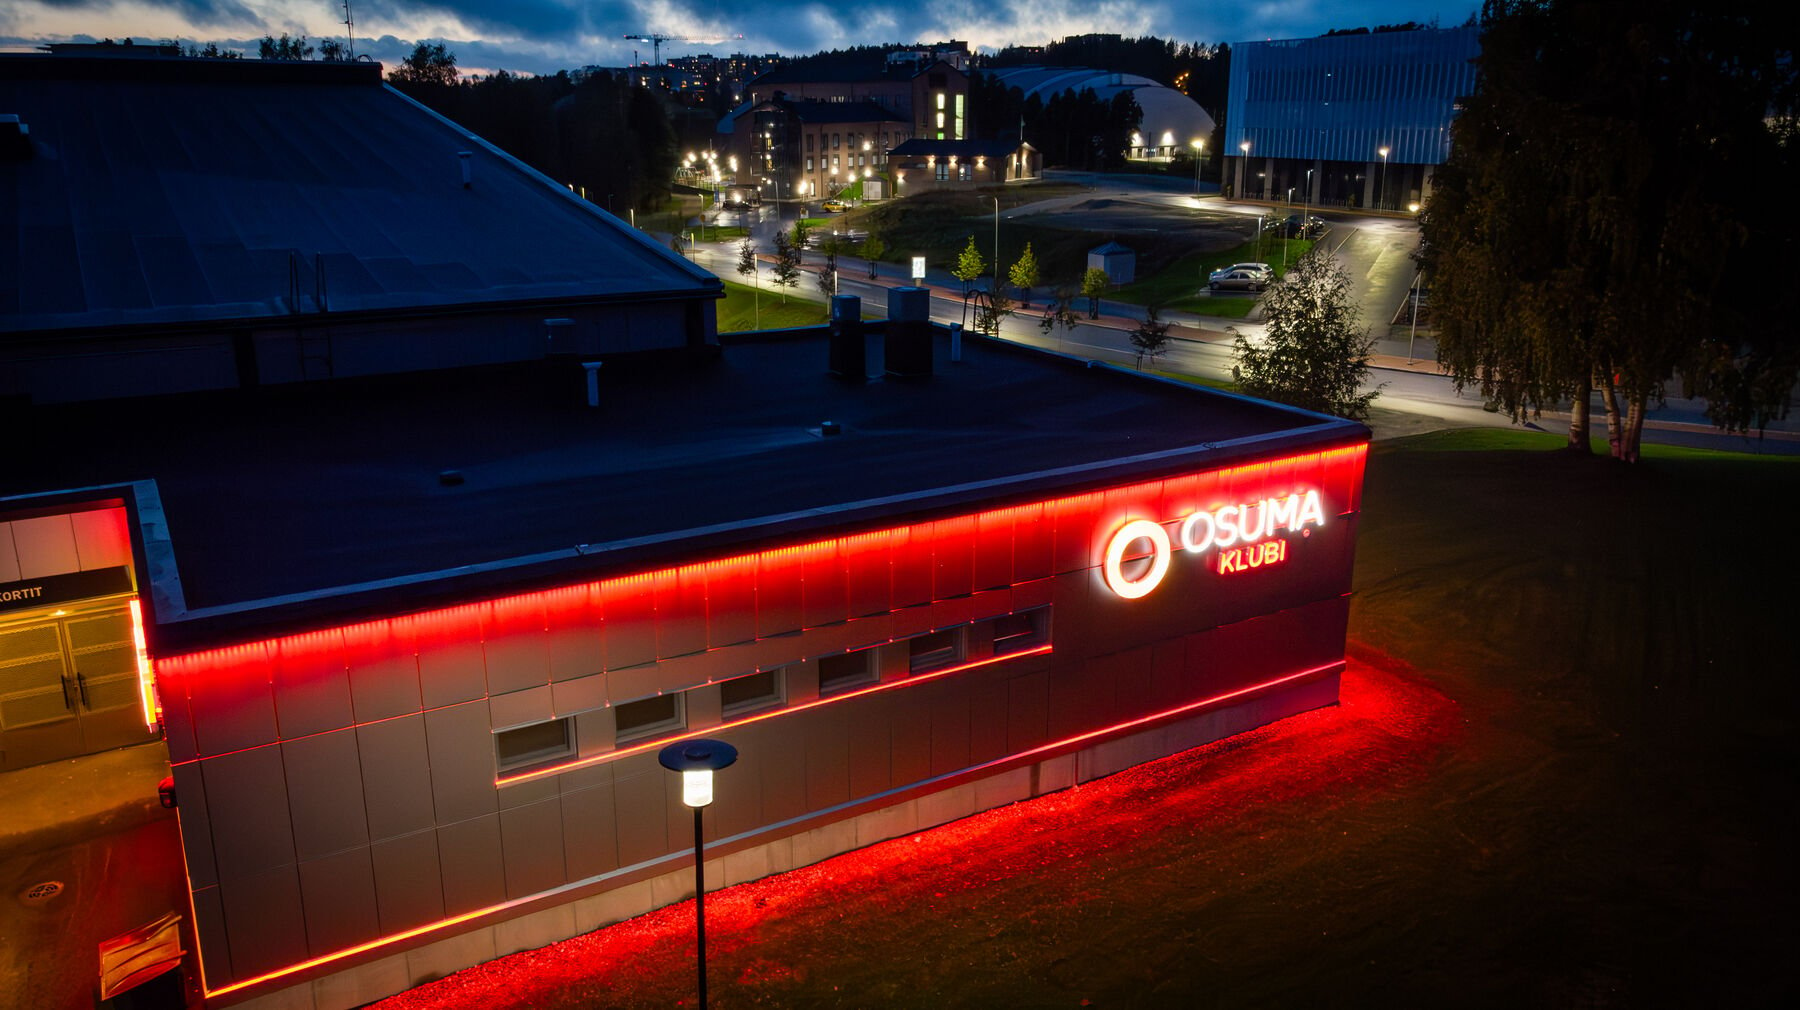 Granon uudelleen brändäämä Osuma-klubi erottuu valaistuksellaan pimeässä illassa. 